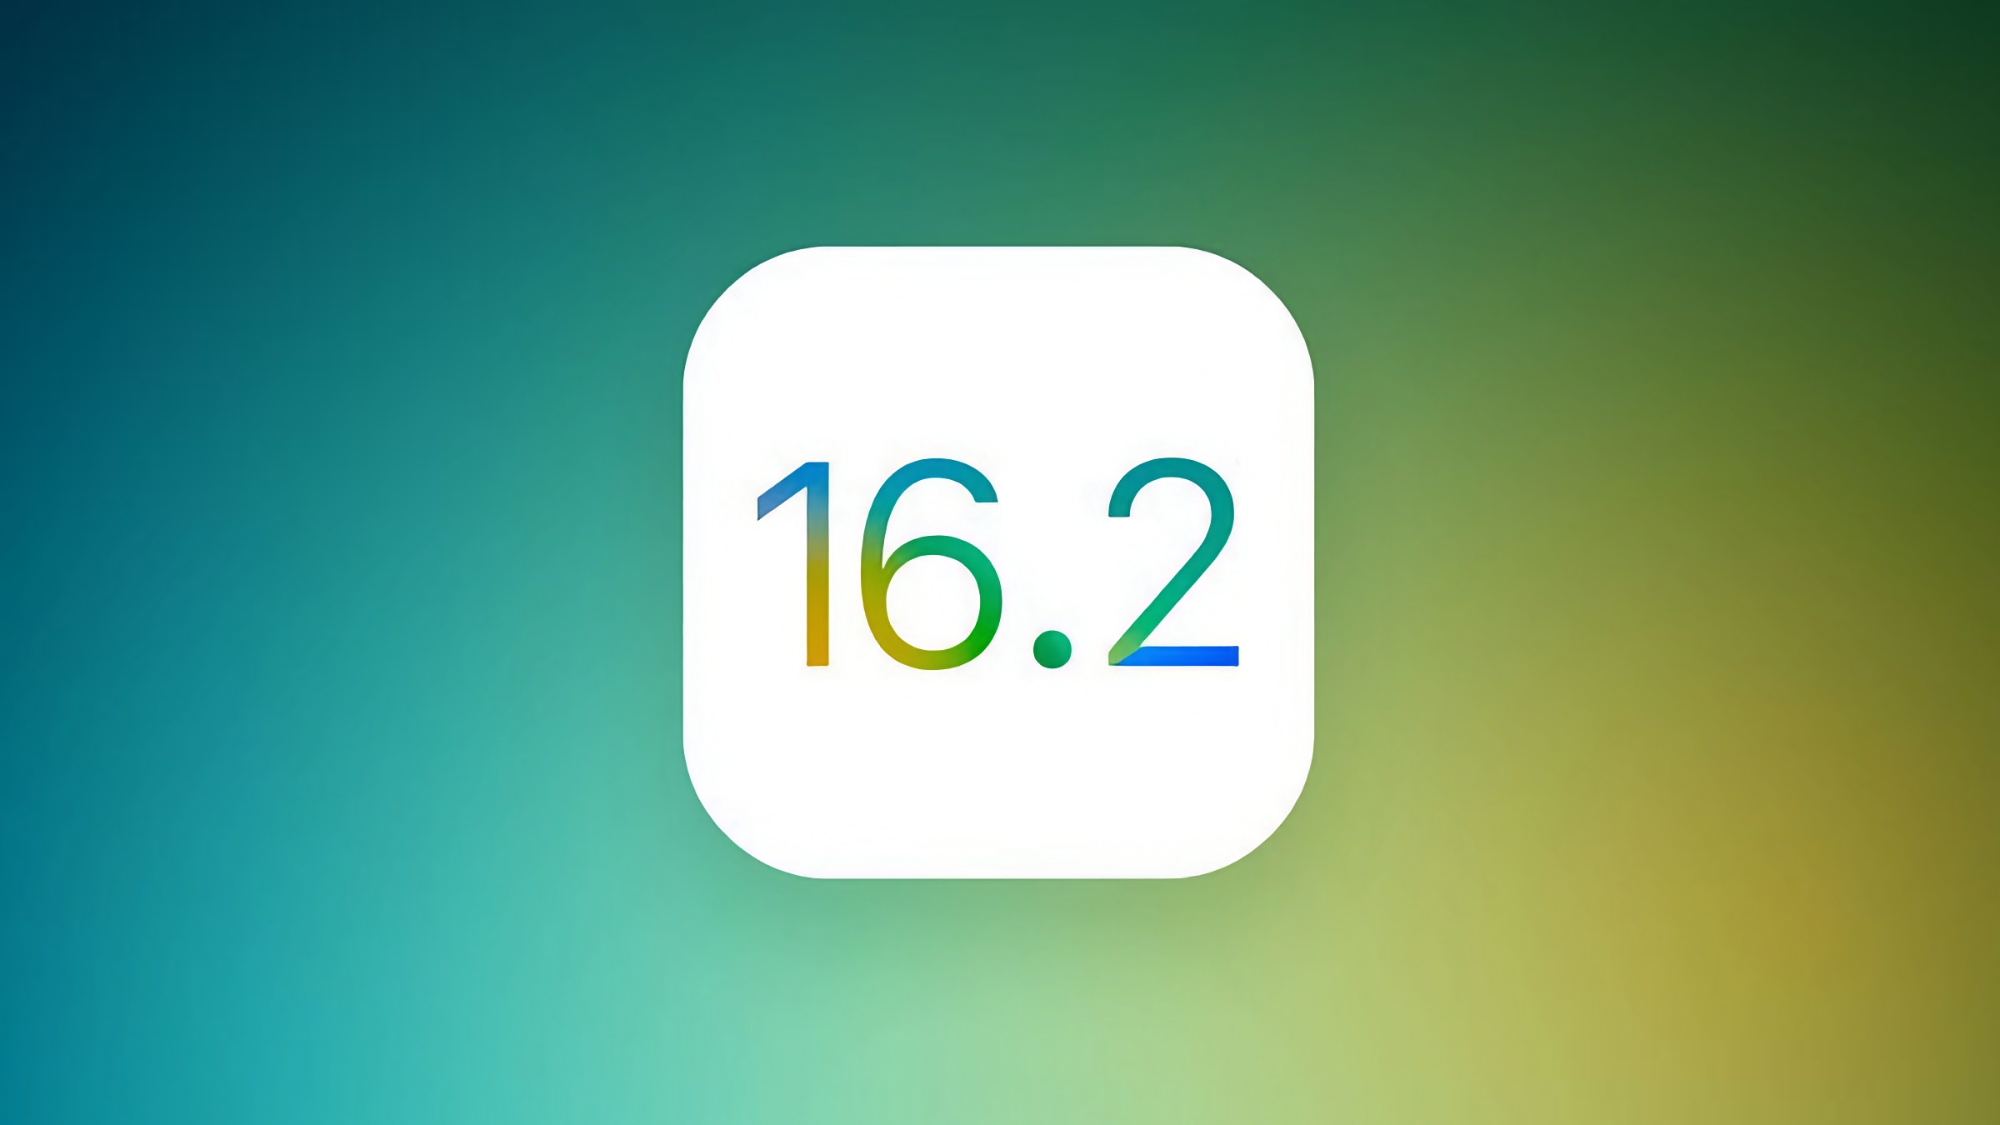 Apple veröffentlicht iOS 16.2 Release Candidate mit vielen kleinen, aber nützlichen Änderungen